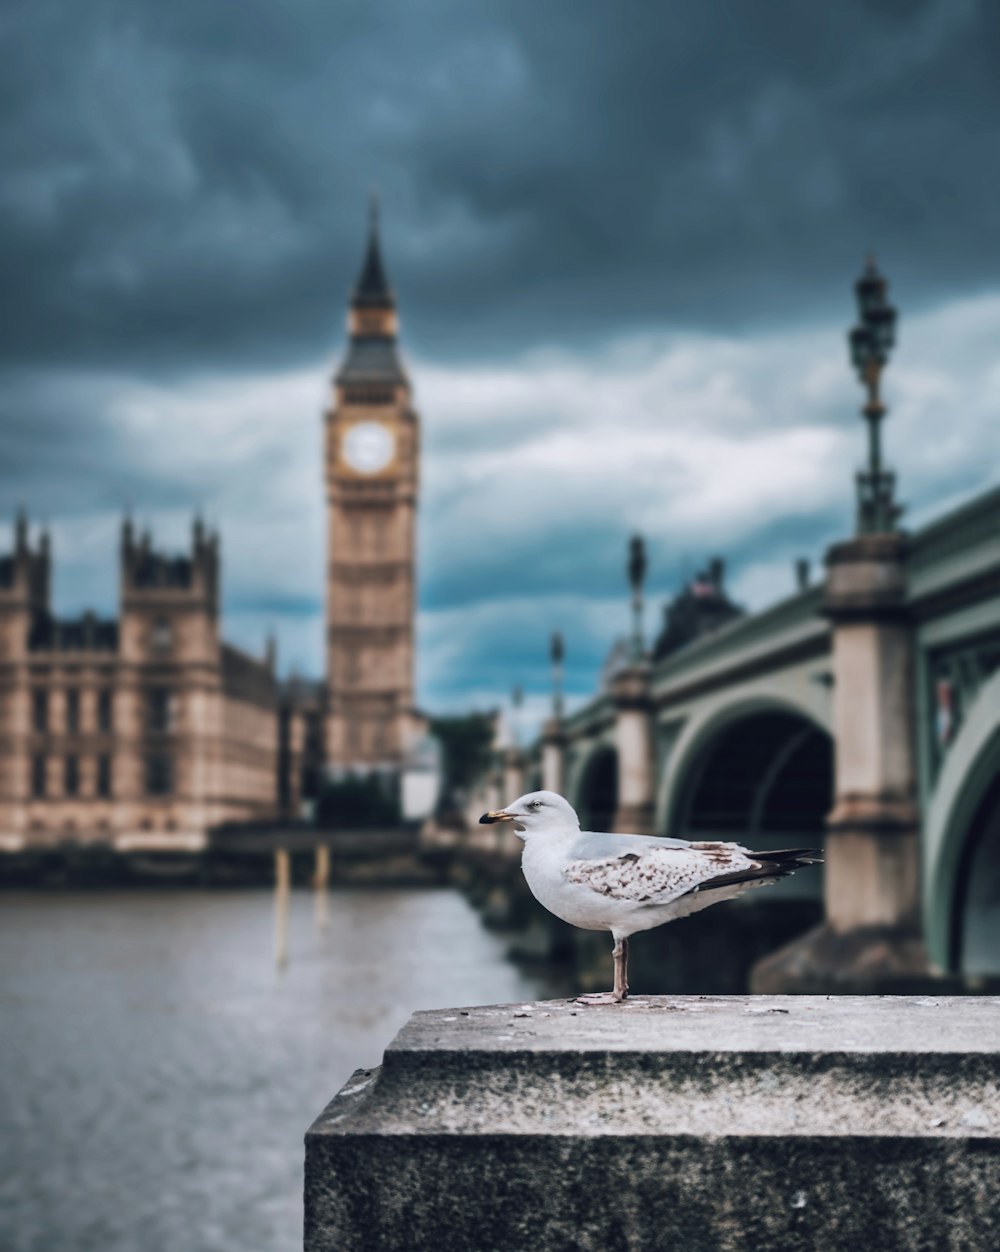 런던의 갈매기와 빅벤의 얕은 초점 사진